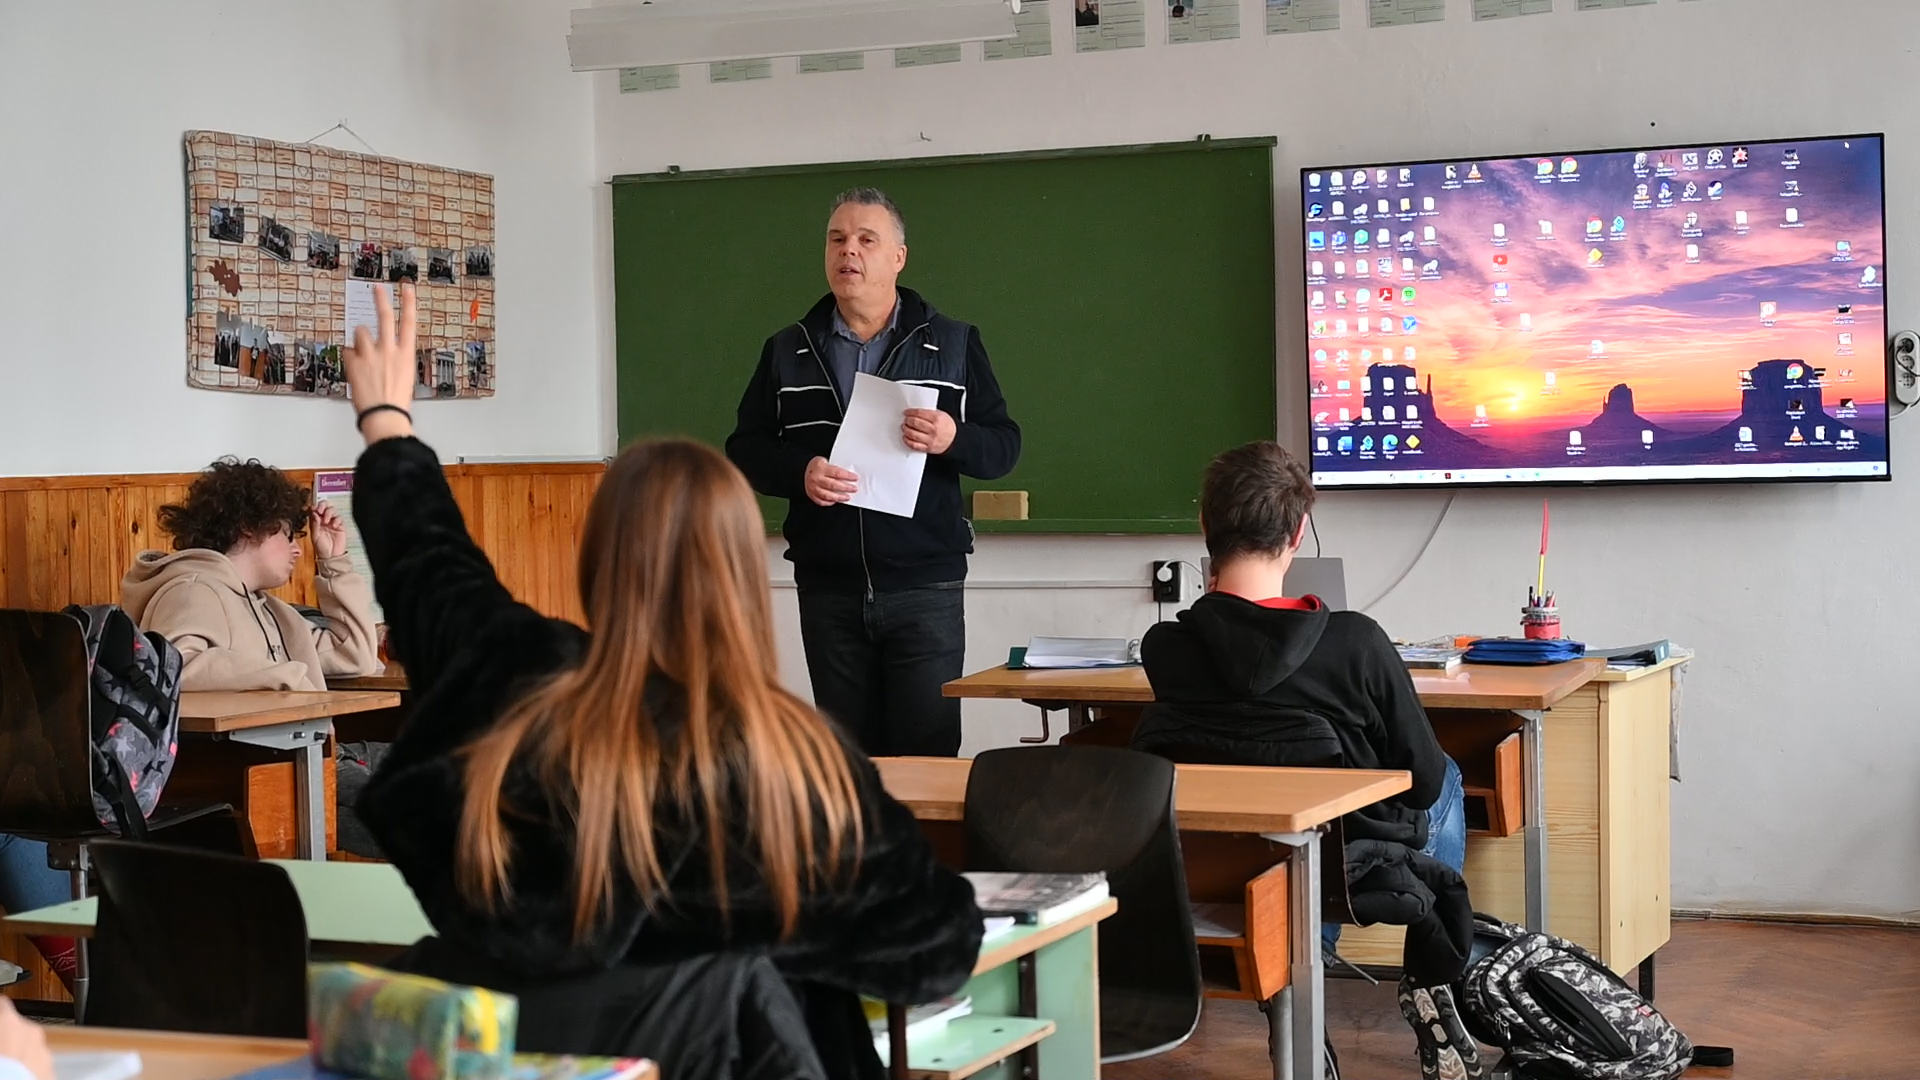 Milliárdos tanára van a fülöpjakabi iskolának: a 100 leggazdagabb magyar egyike tanítja a történelmet a helyi...